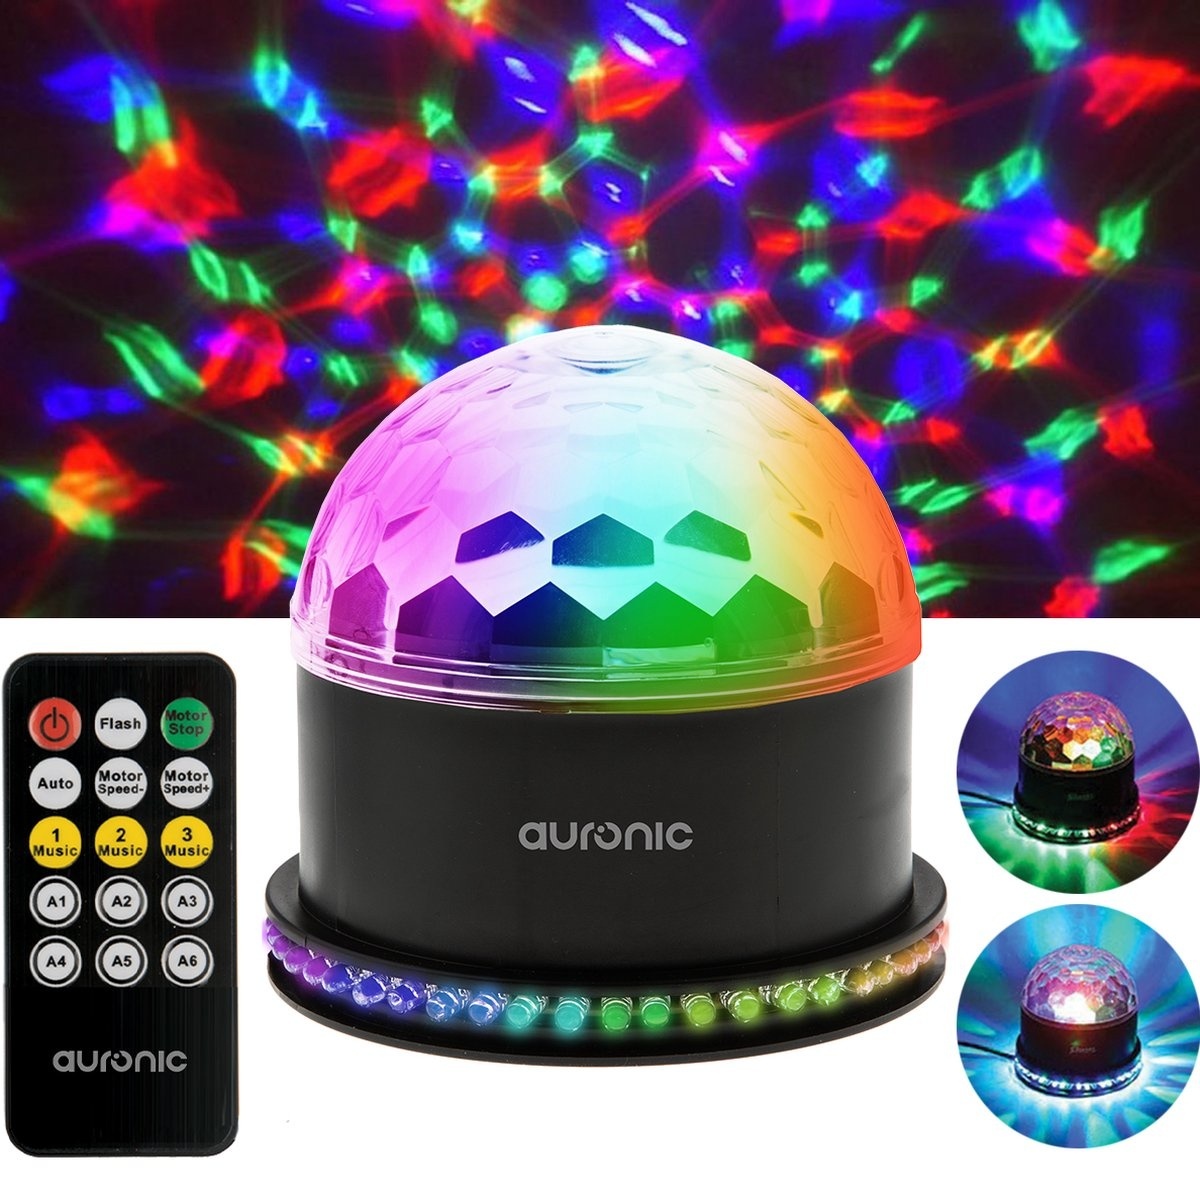 B-Ware Auronic rotierende Discolampe - Discoball - LED - Fernbedienung und  Musik gesteuert - Kinder/Erwachsene online kaufen bei  